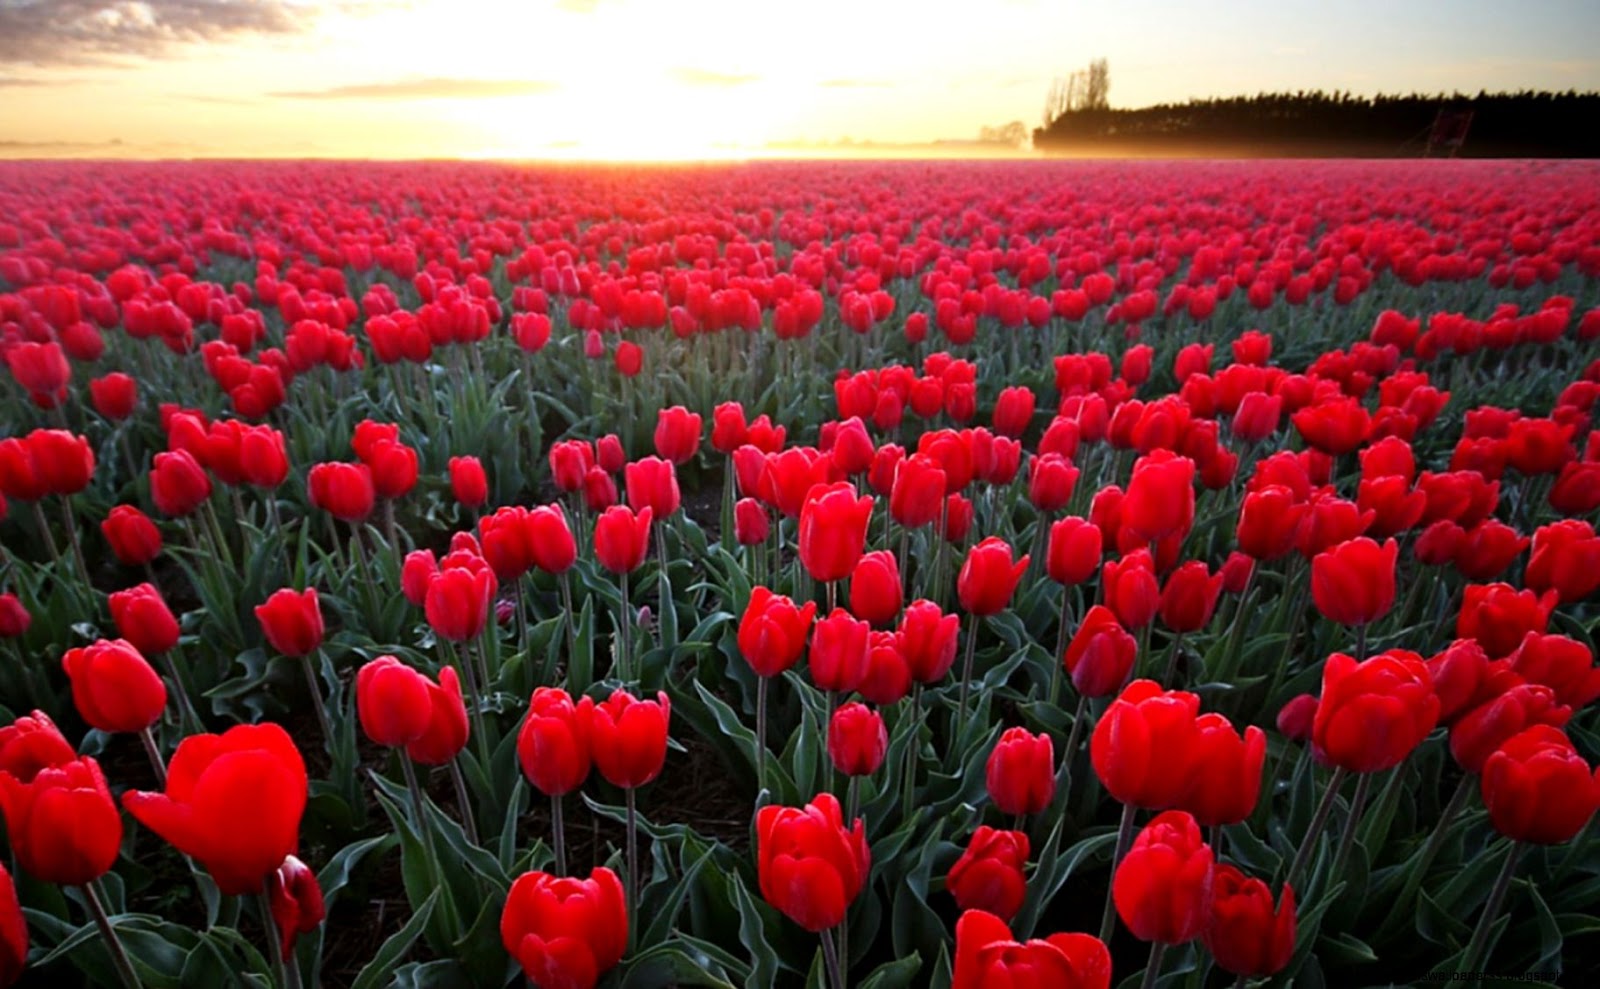 Ảnh vườn hoa tulip đỏ rực